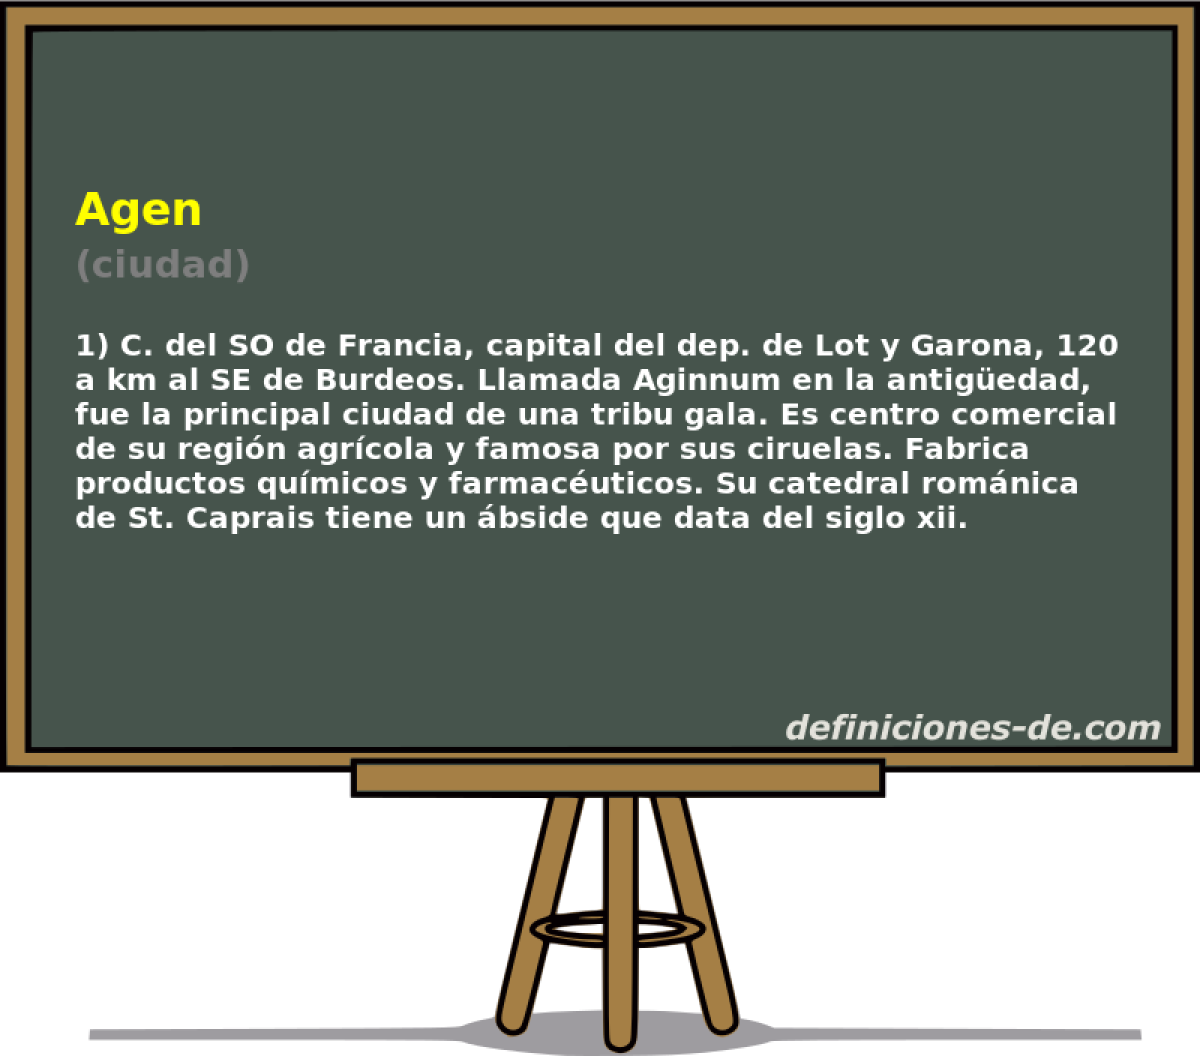 Agen (ciudad)